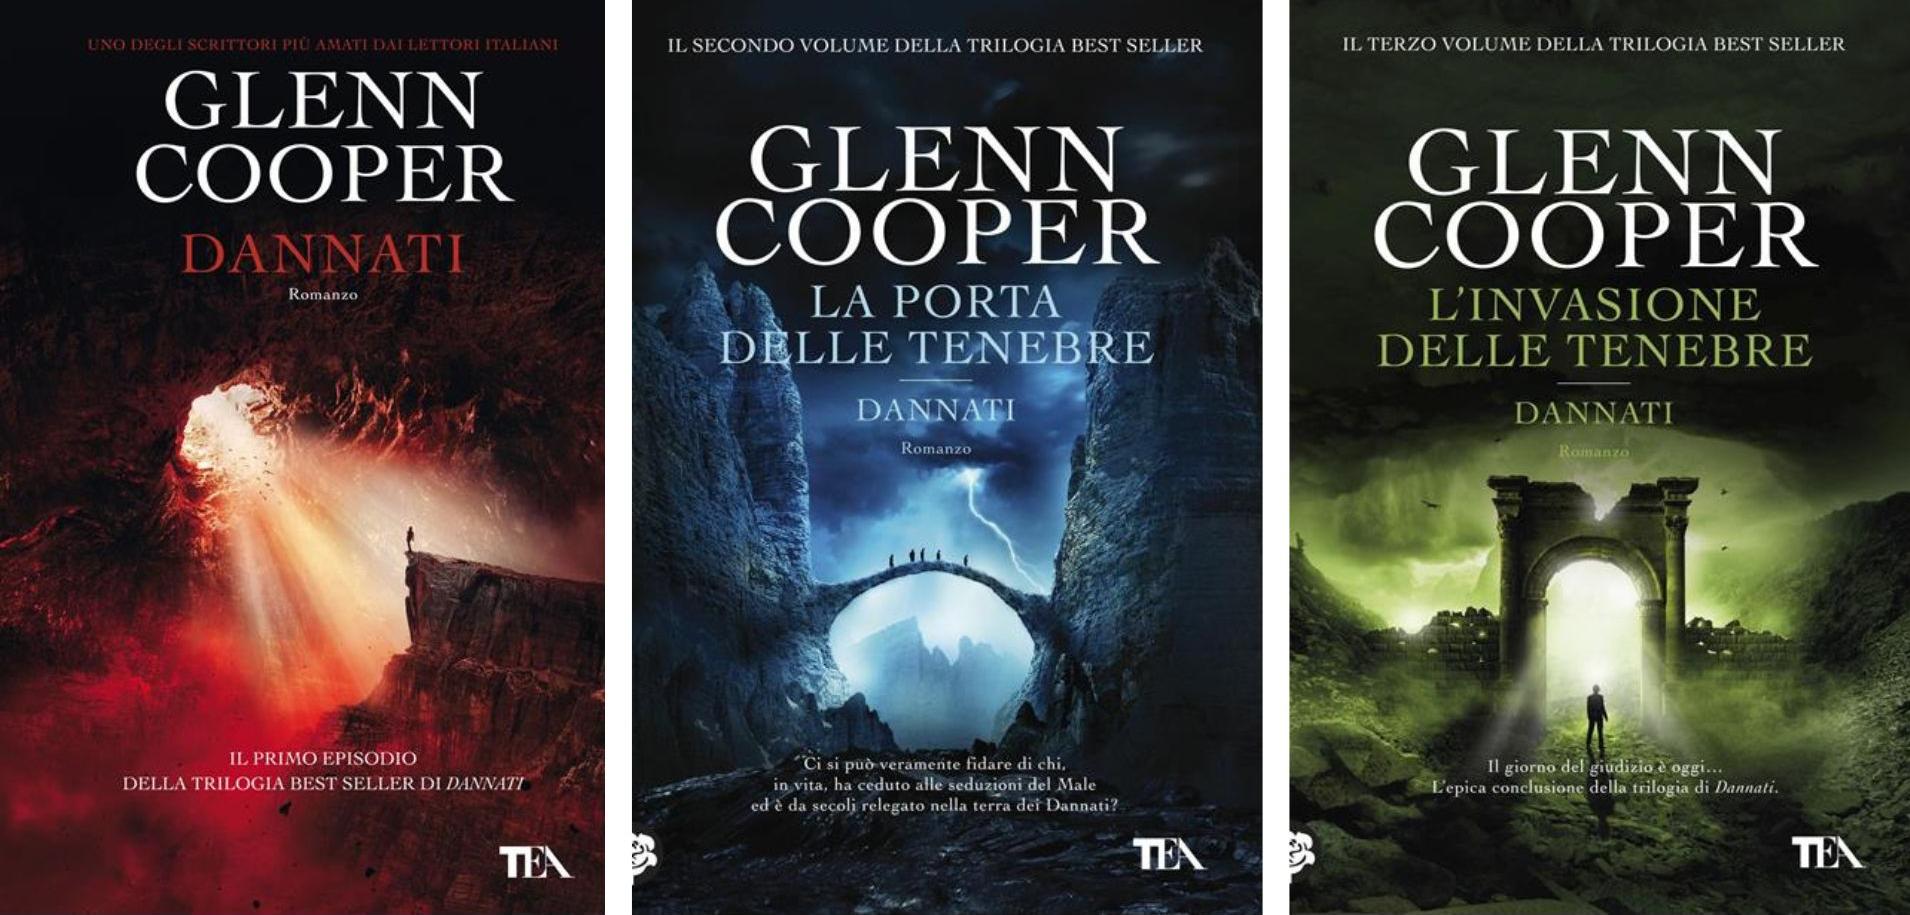 La trilogia di Dannati, che include alcuni dei libri più famosi di Glenn Cooper